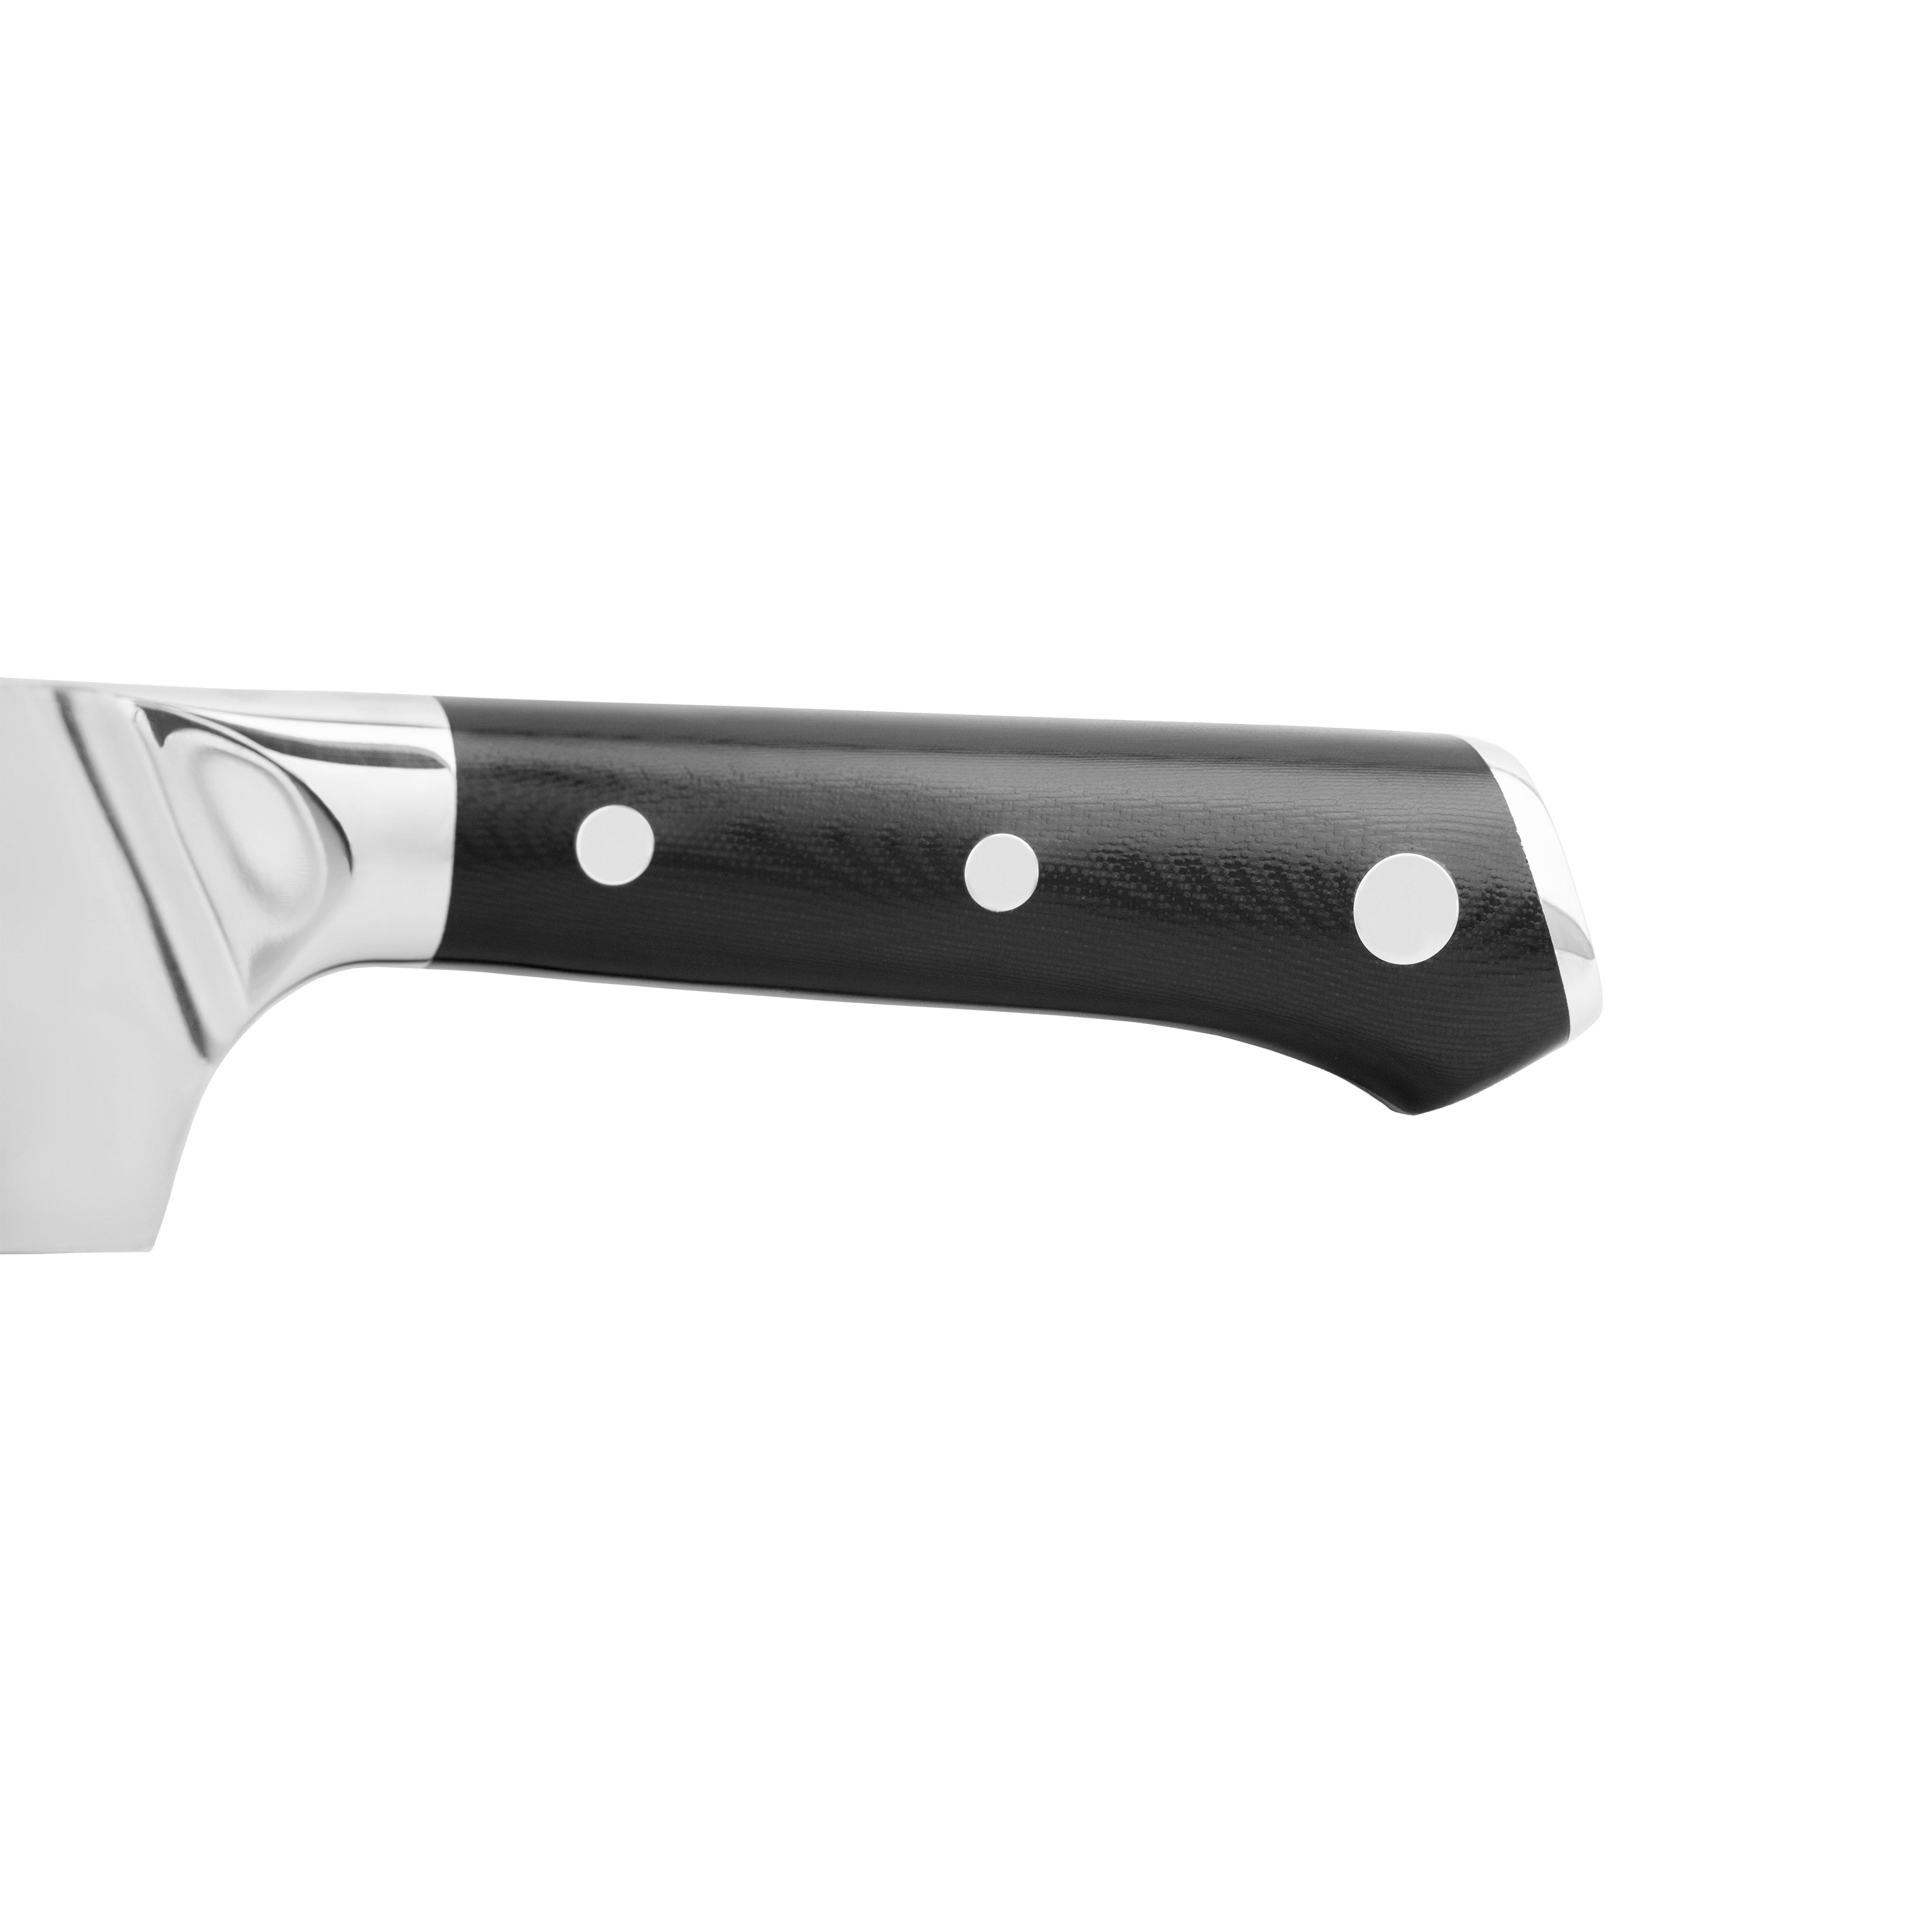 ZLINE 3-Piece Professional Damascus Steel Kitchen Knife Set